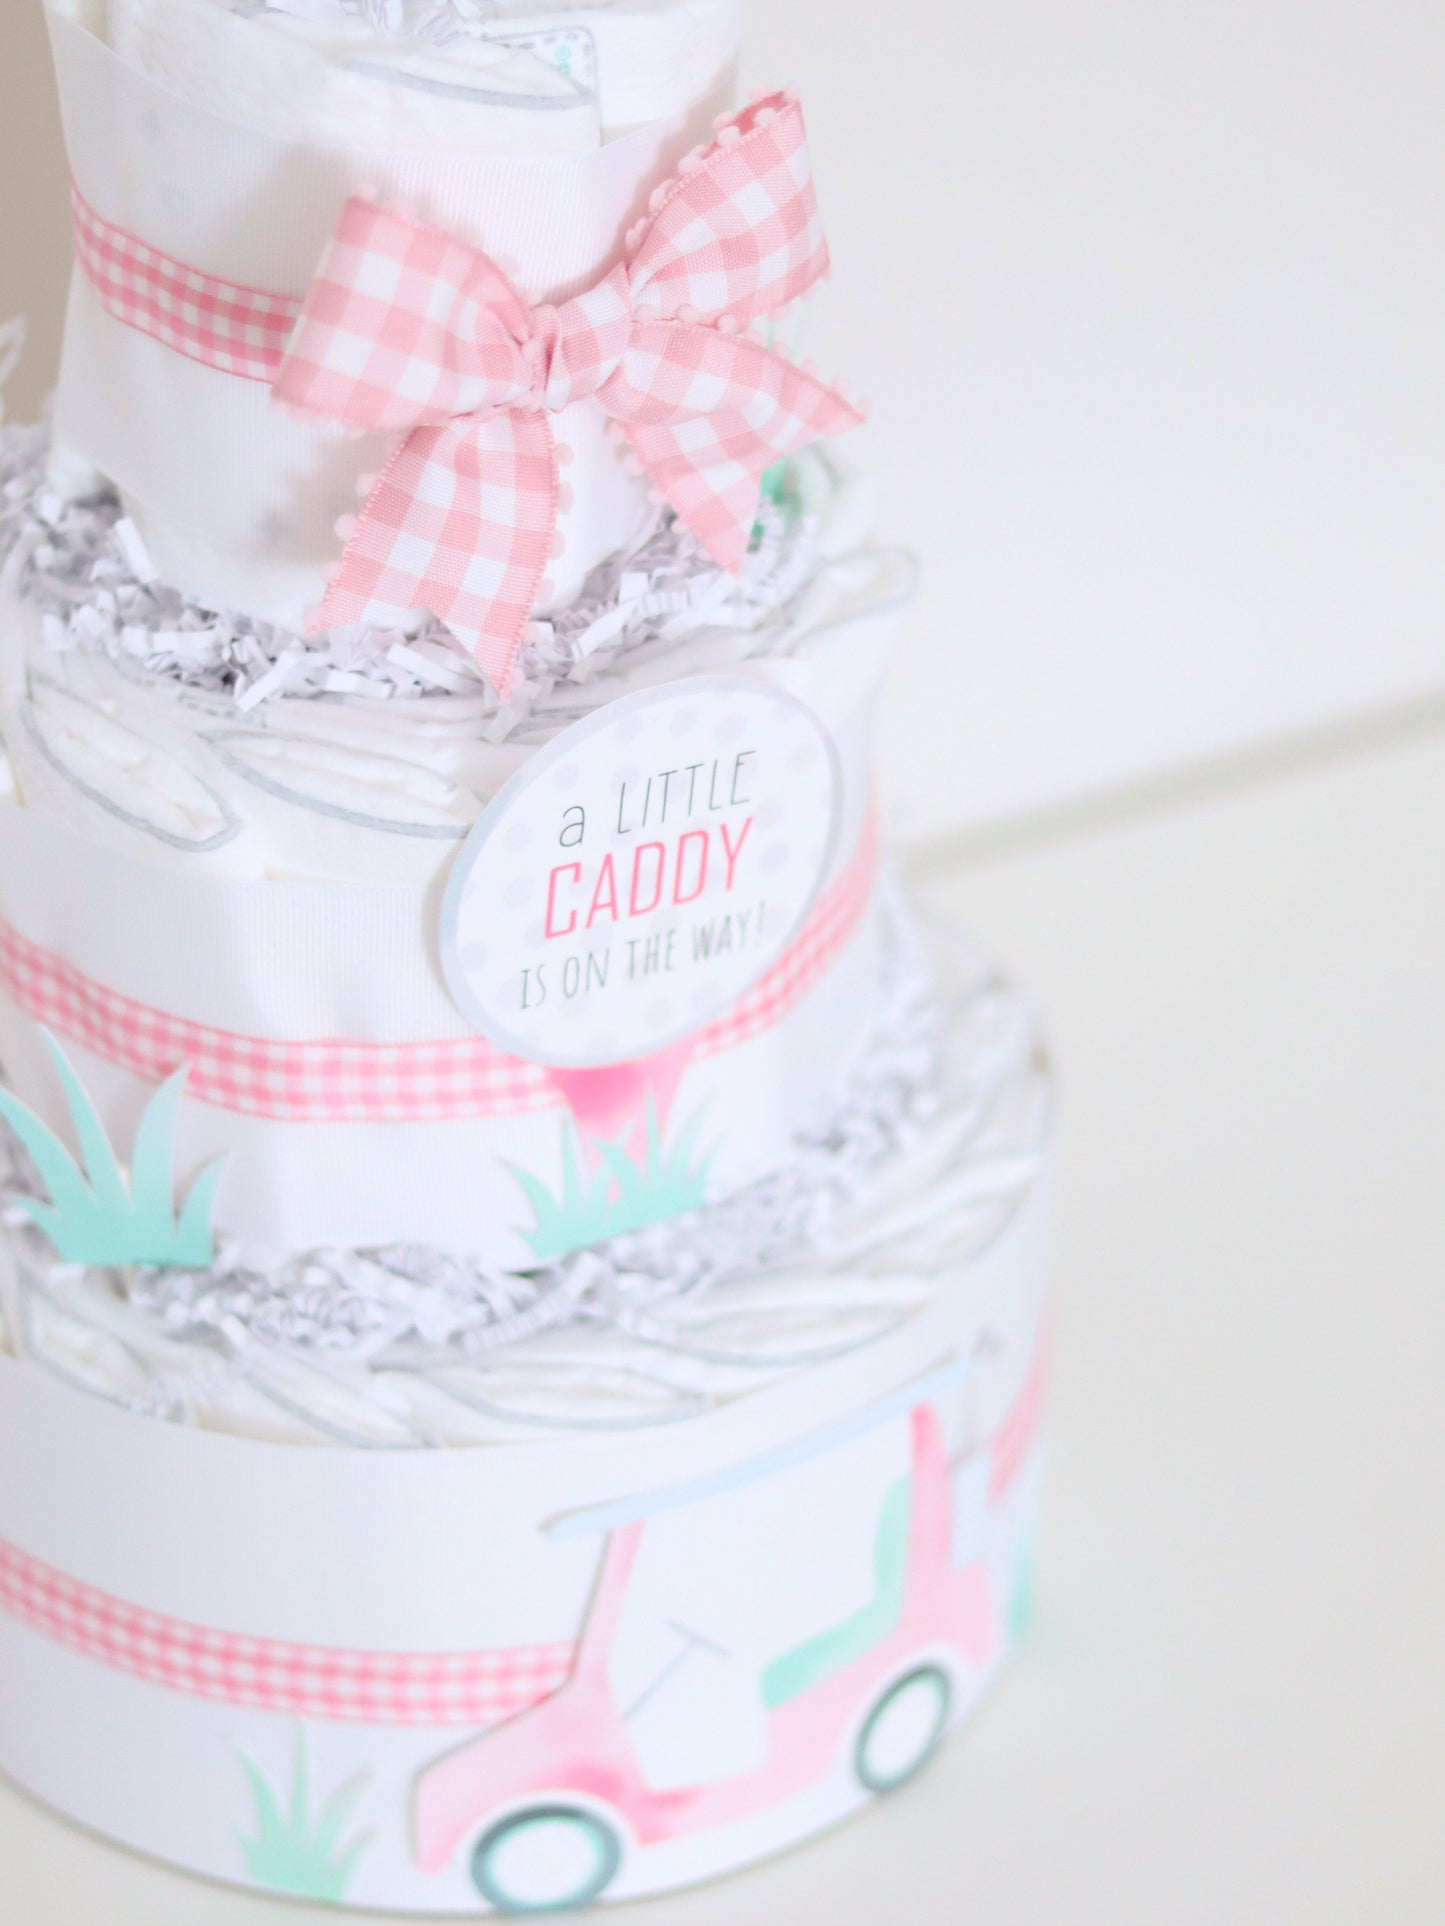 pink little caddy golf diaper cake